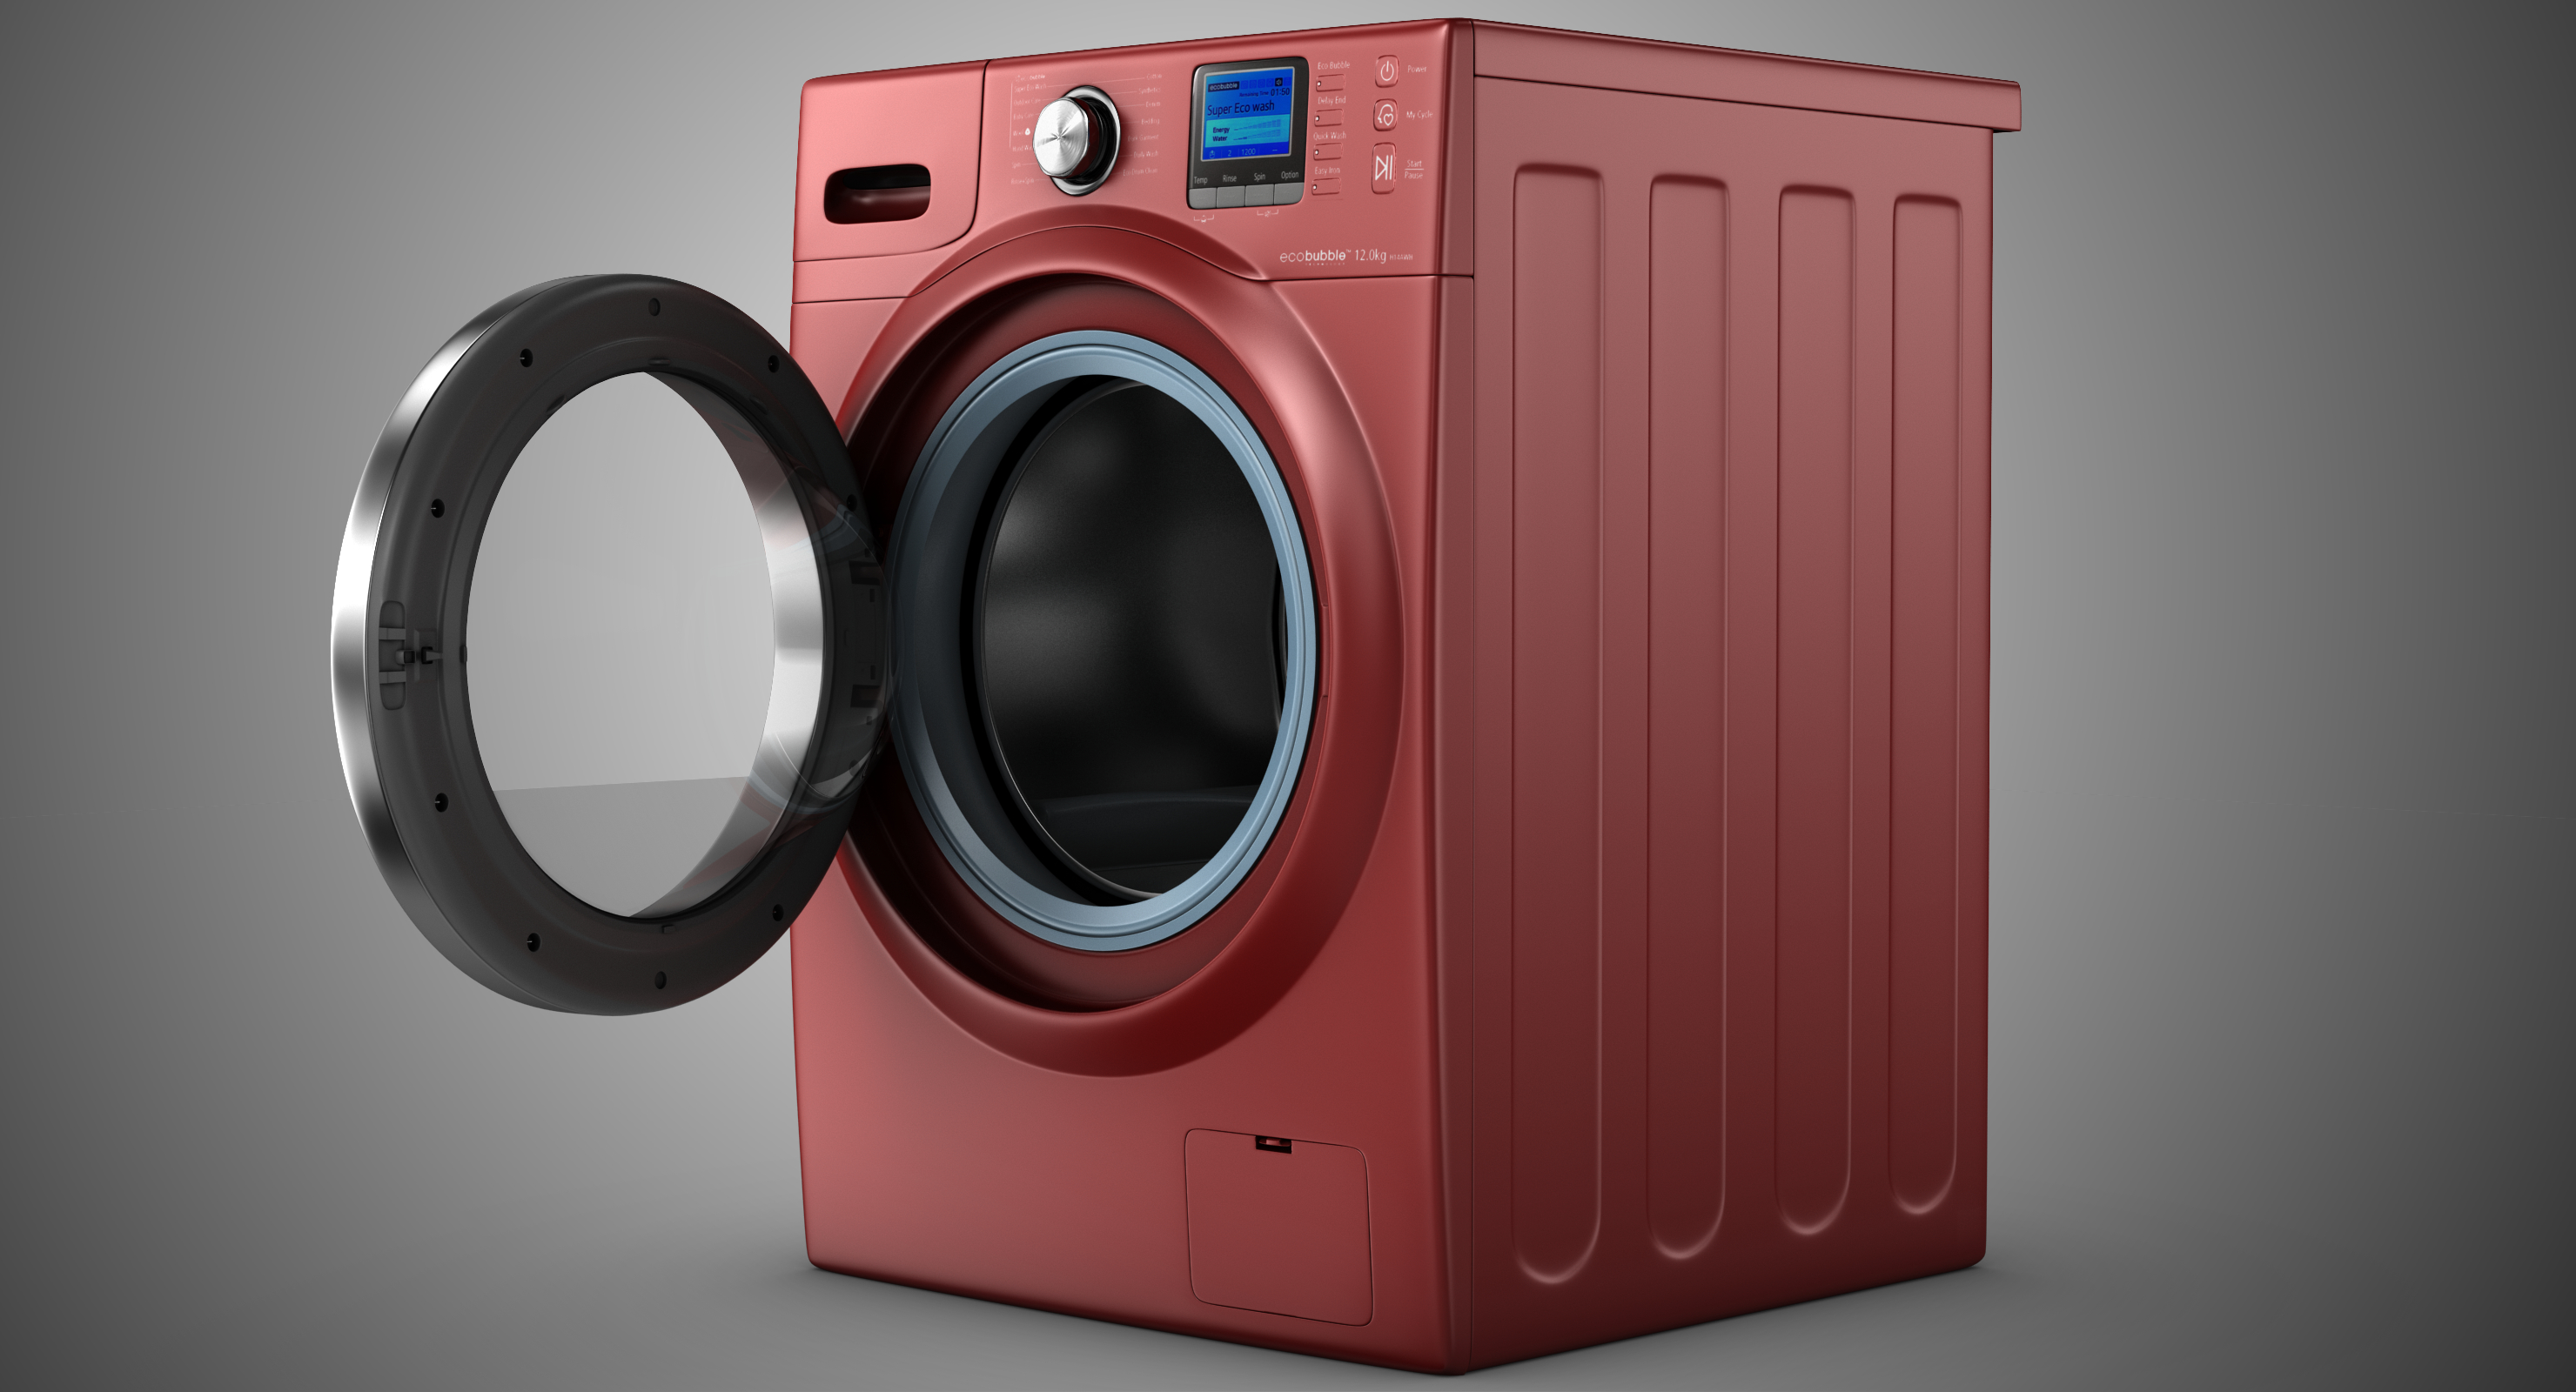 ecobubble洗衣机图片